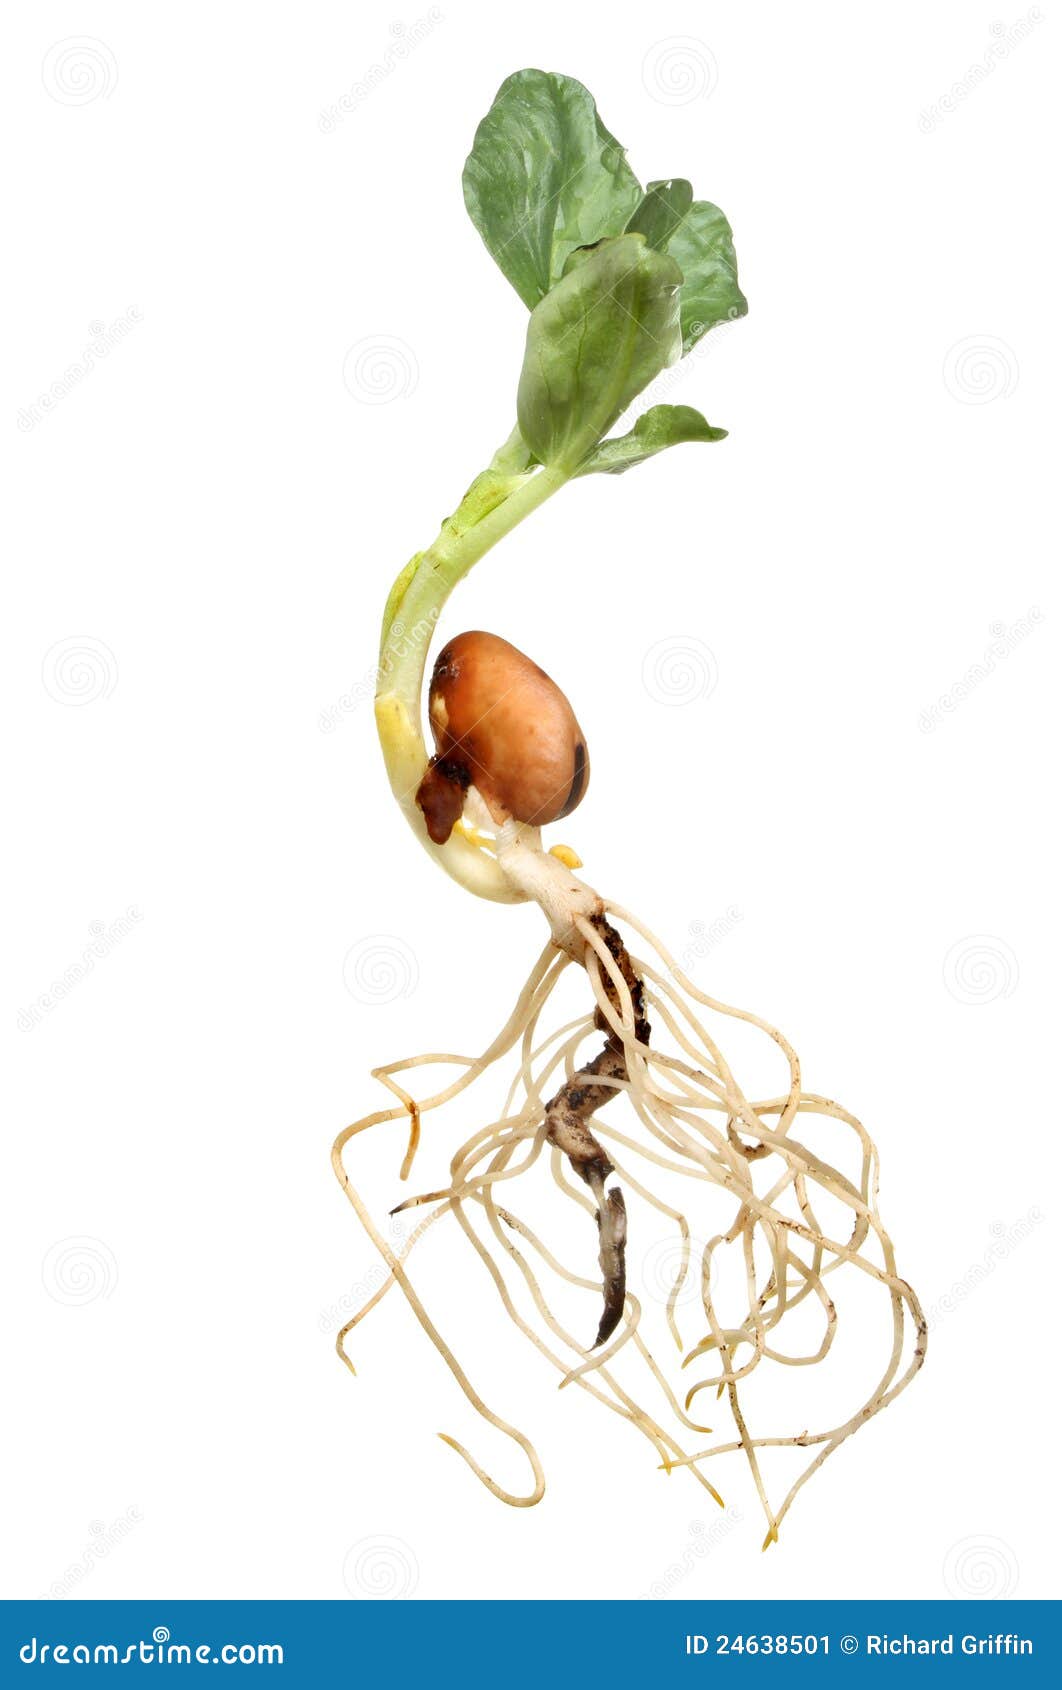 Фасоль корневая. Корень фасоли. Корневая система фасоли. Пророщенные семена бобовых. Фасоль растение с корнем.